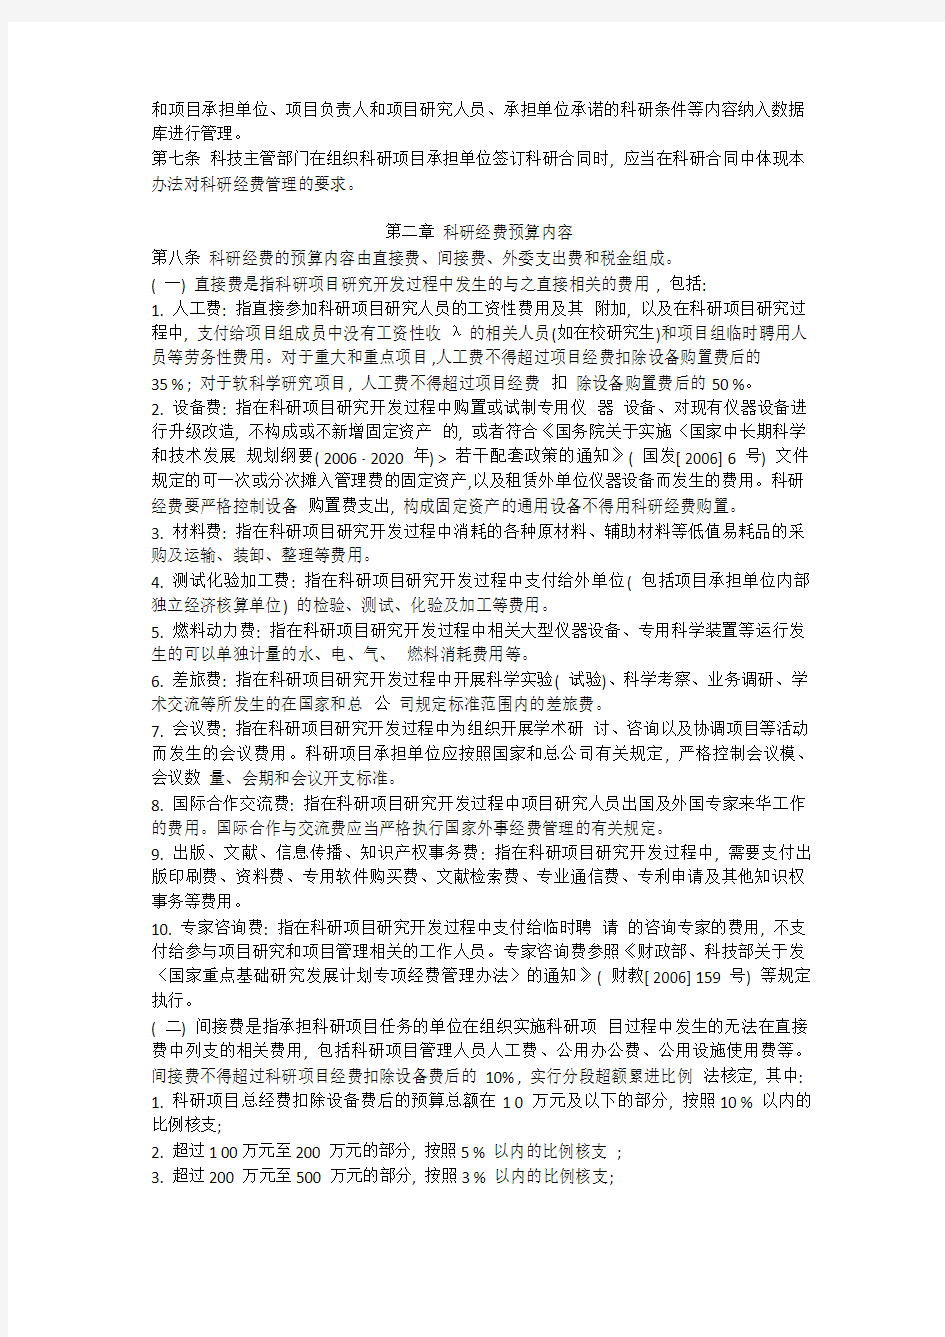 中国铁路总公司科研经费管理暂行办法